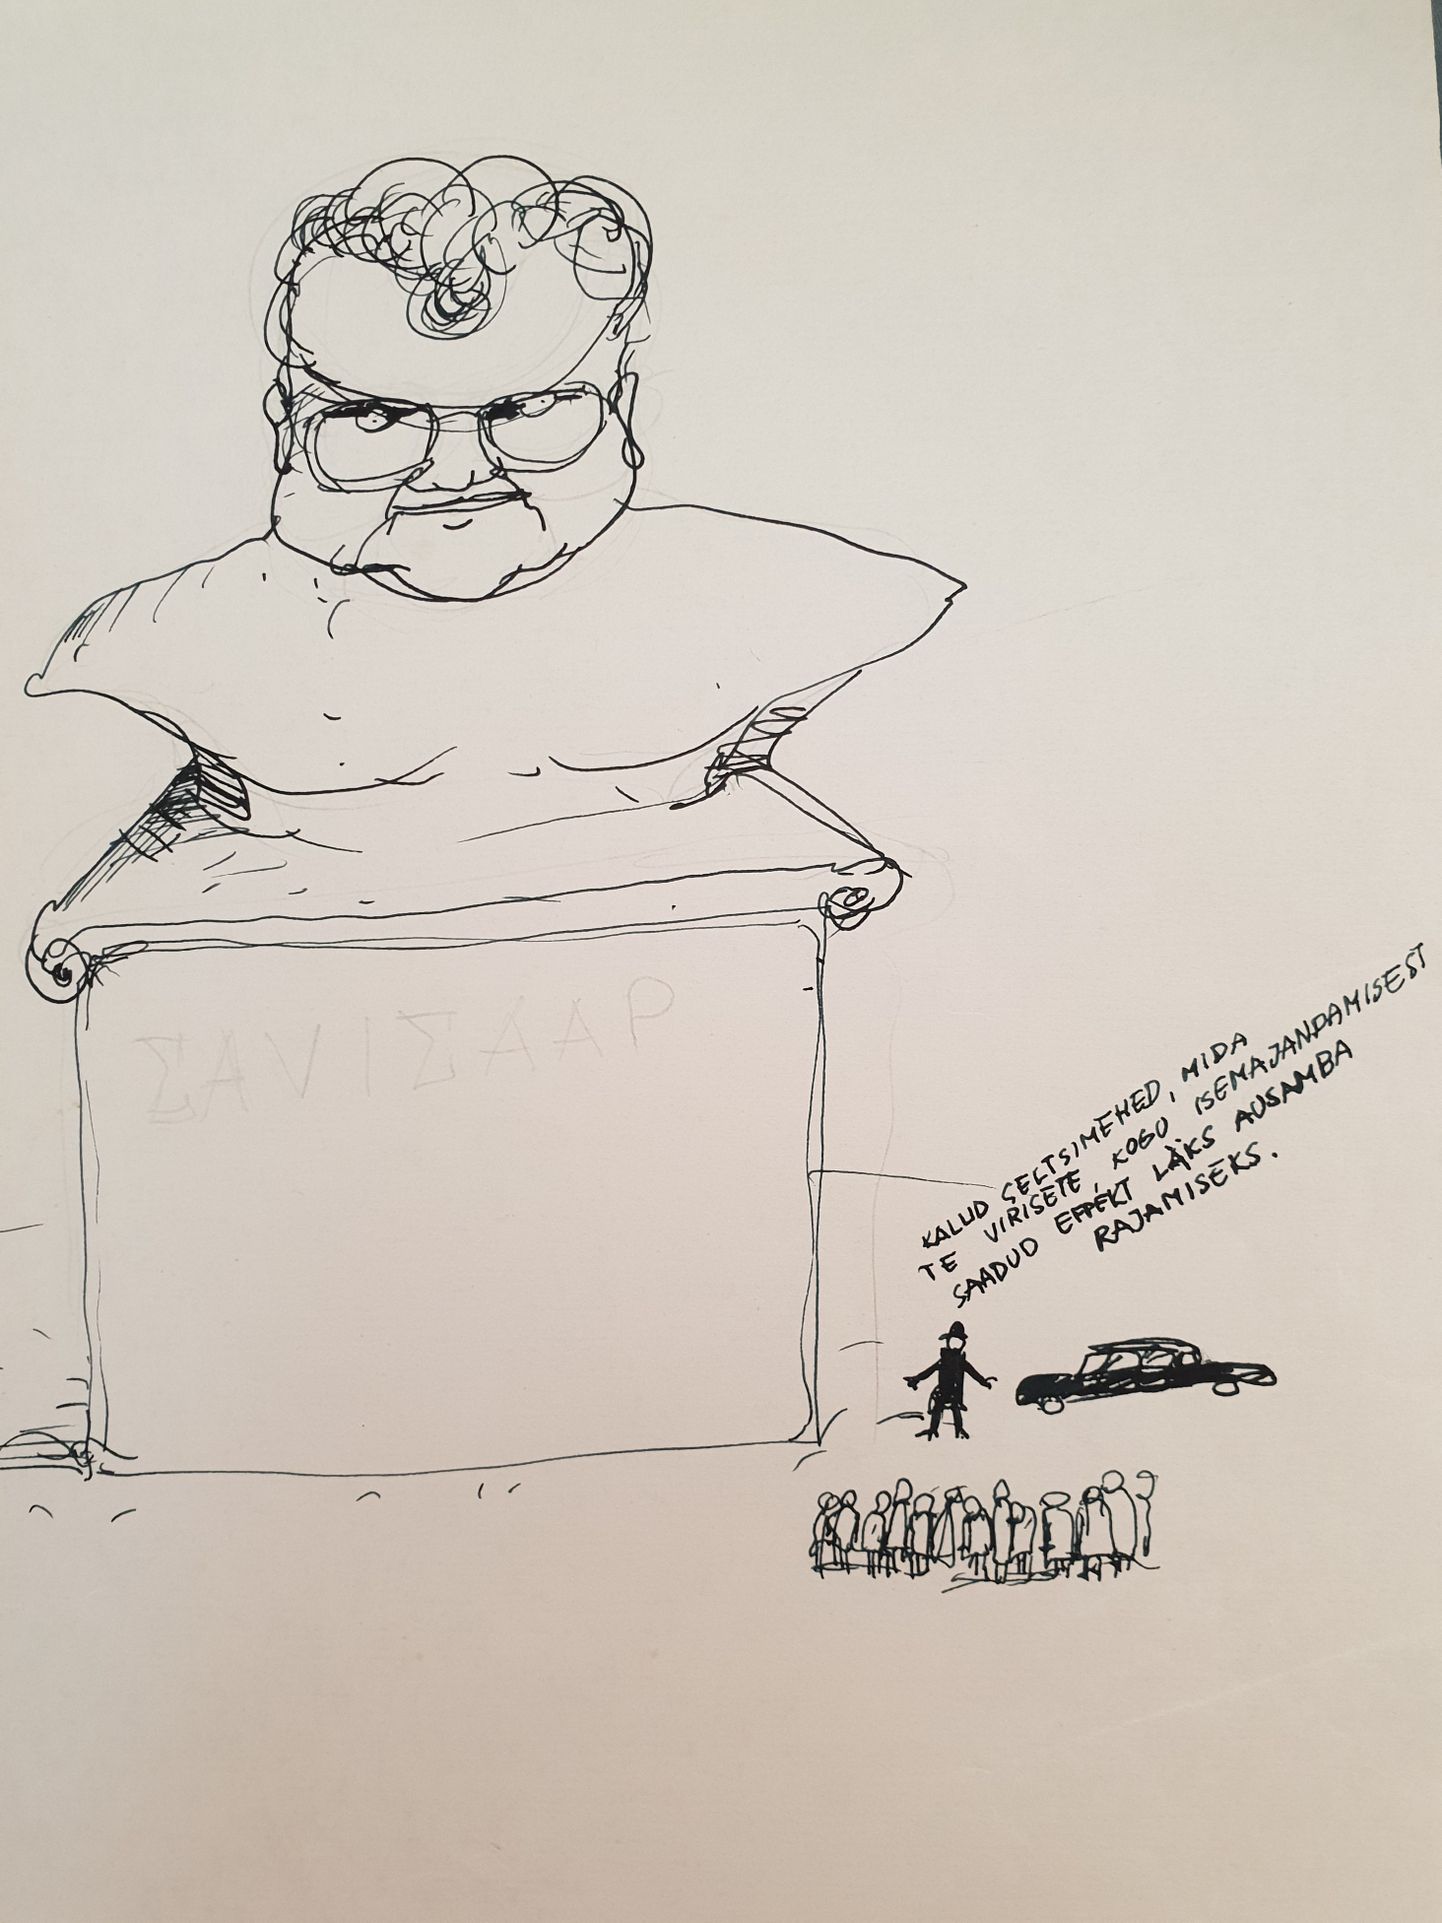 Marek Strandbergi joonistatud karikatuur Edgar Savisaarest